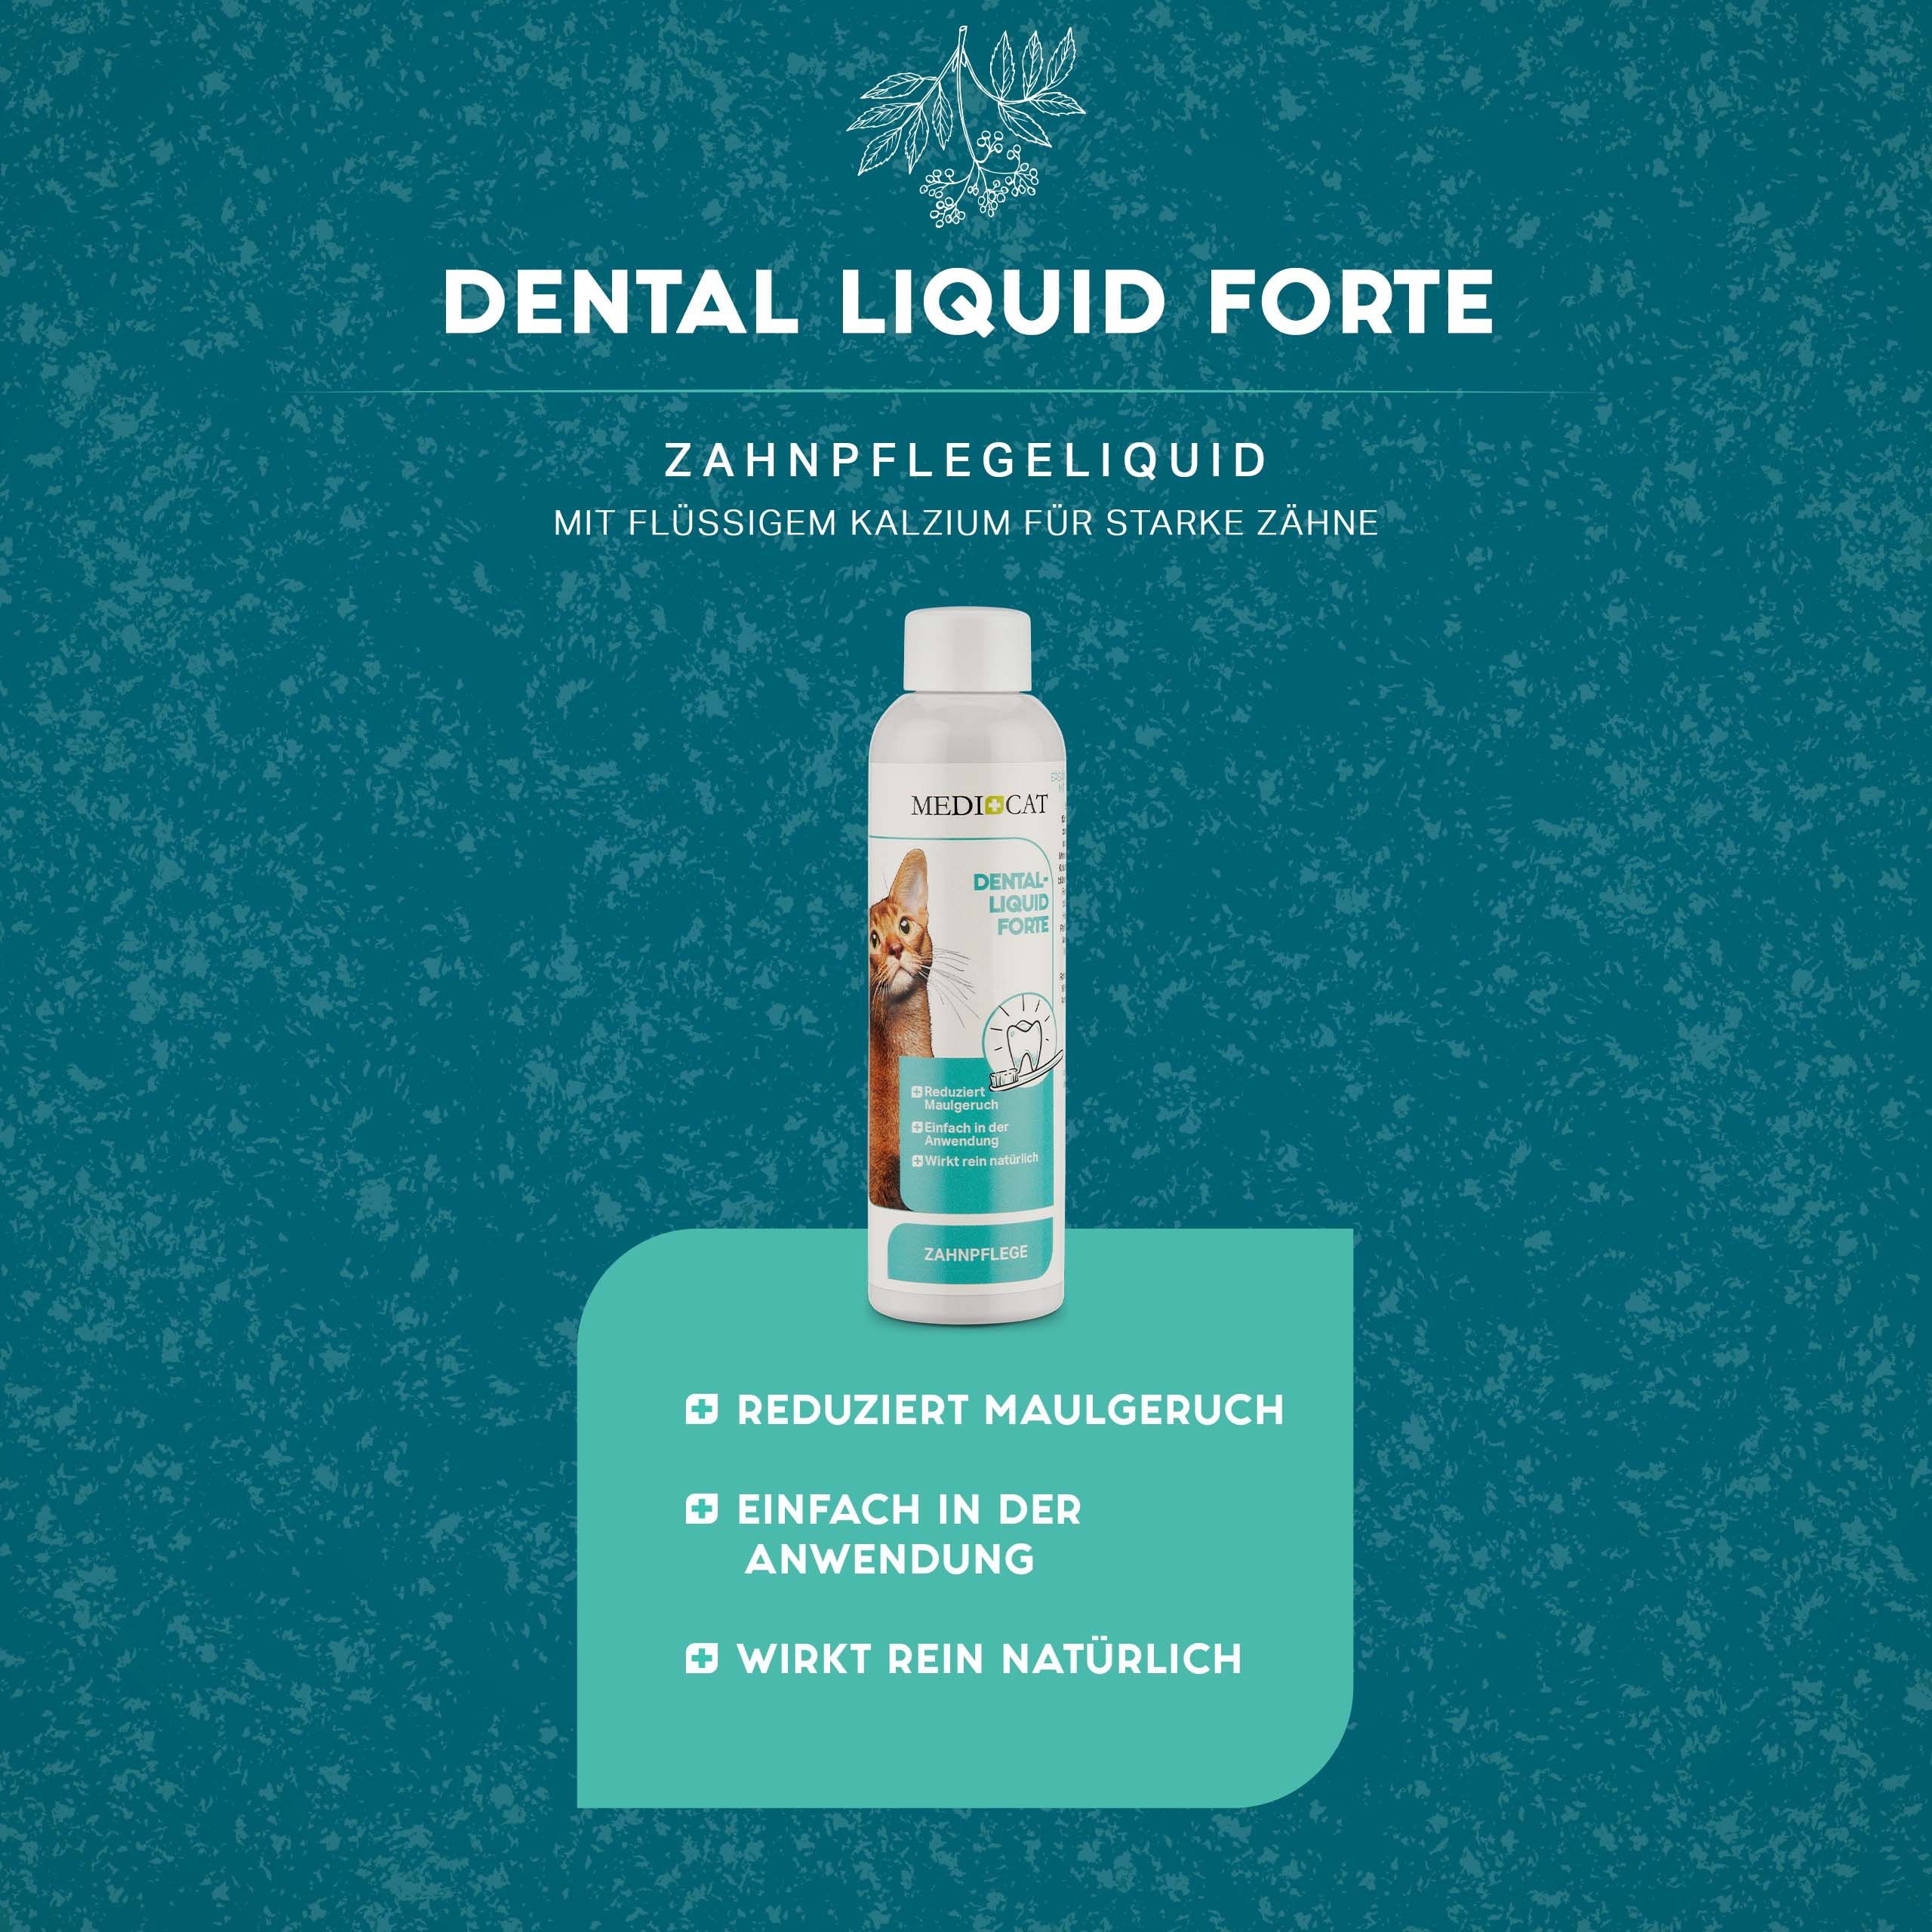 MEDICAT Dental Liquid Forte